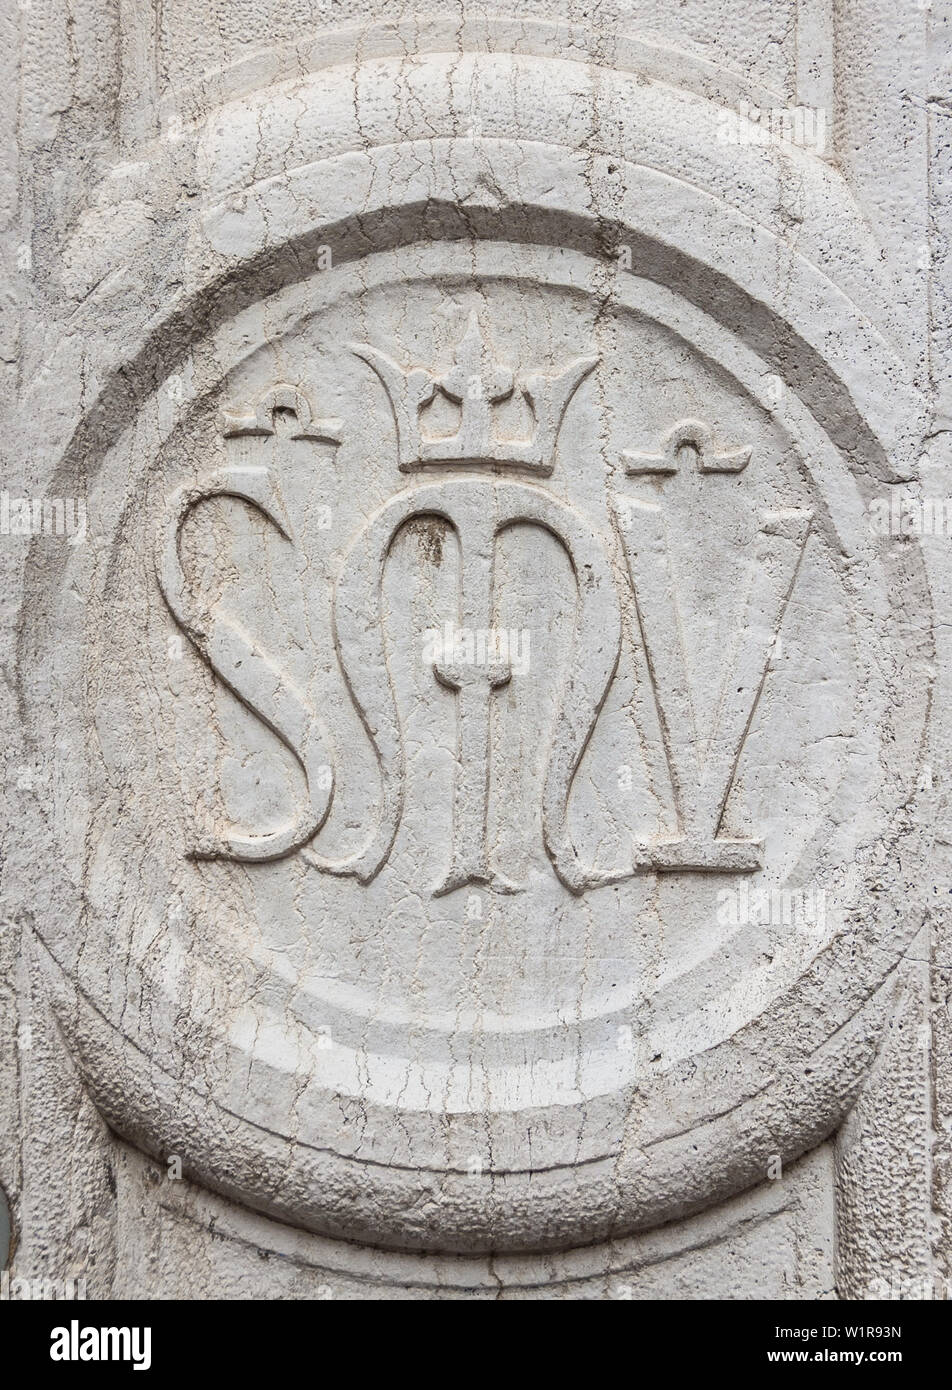 Scuola vecchia della Misericordia (Old School of Mercy) ancient symbol on a Venice wall Stock Photo